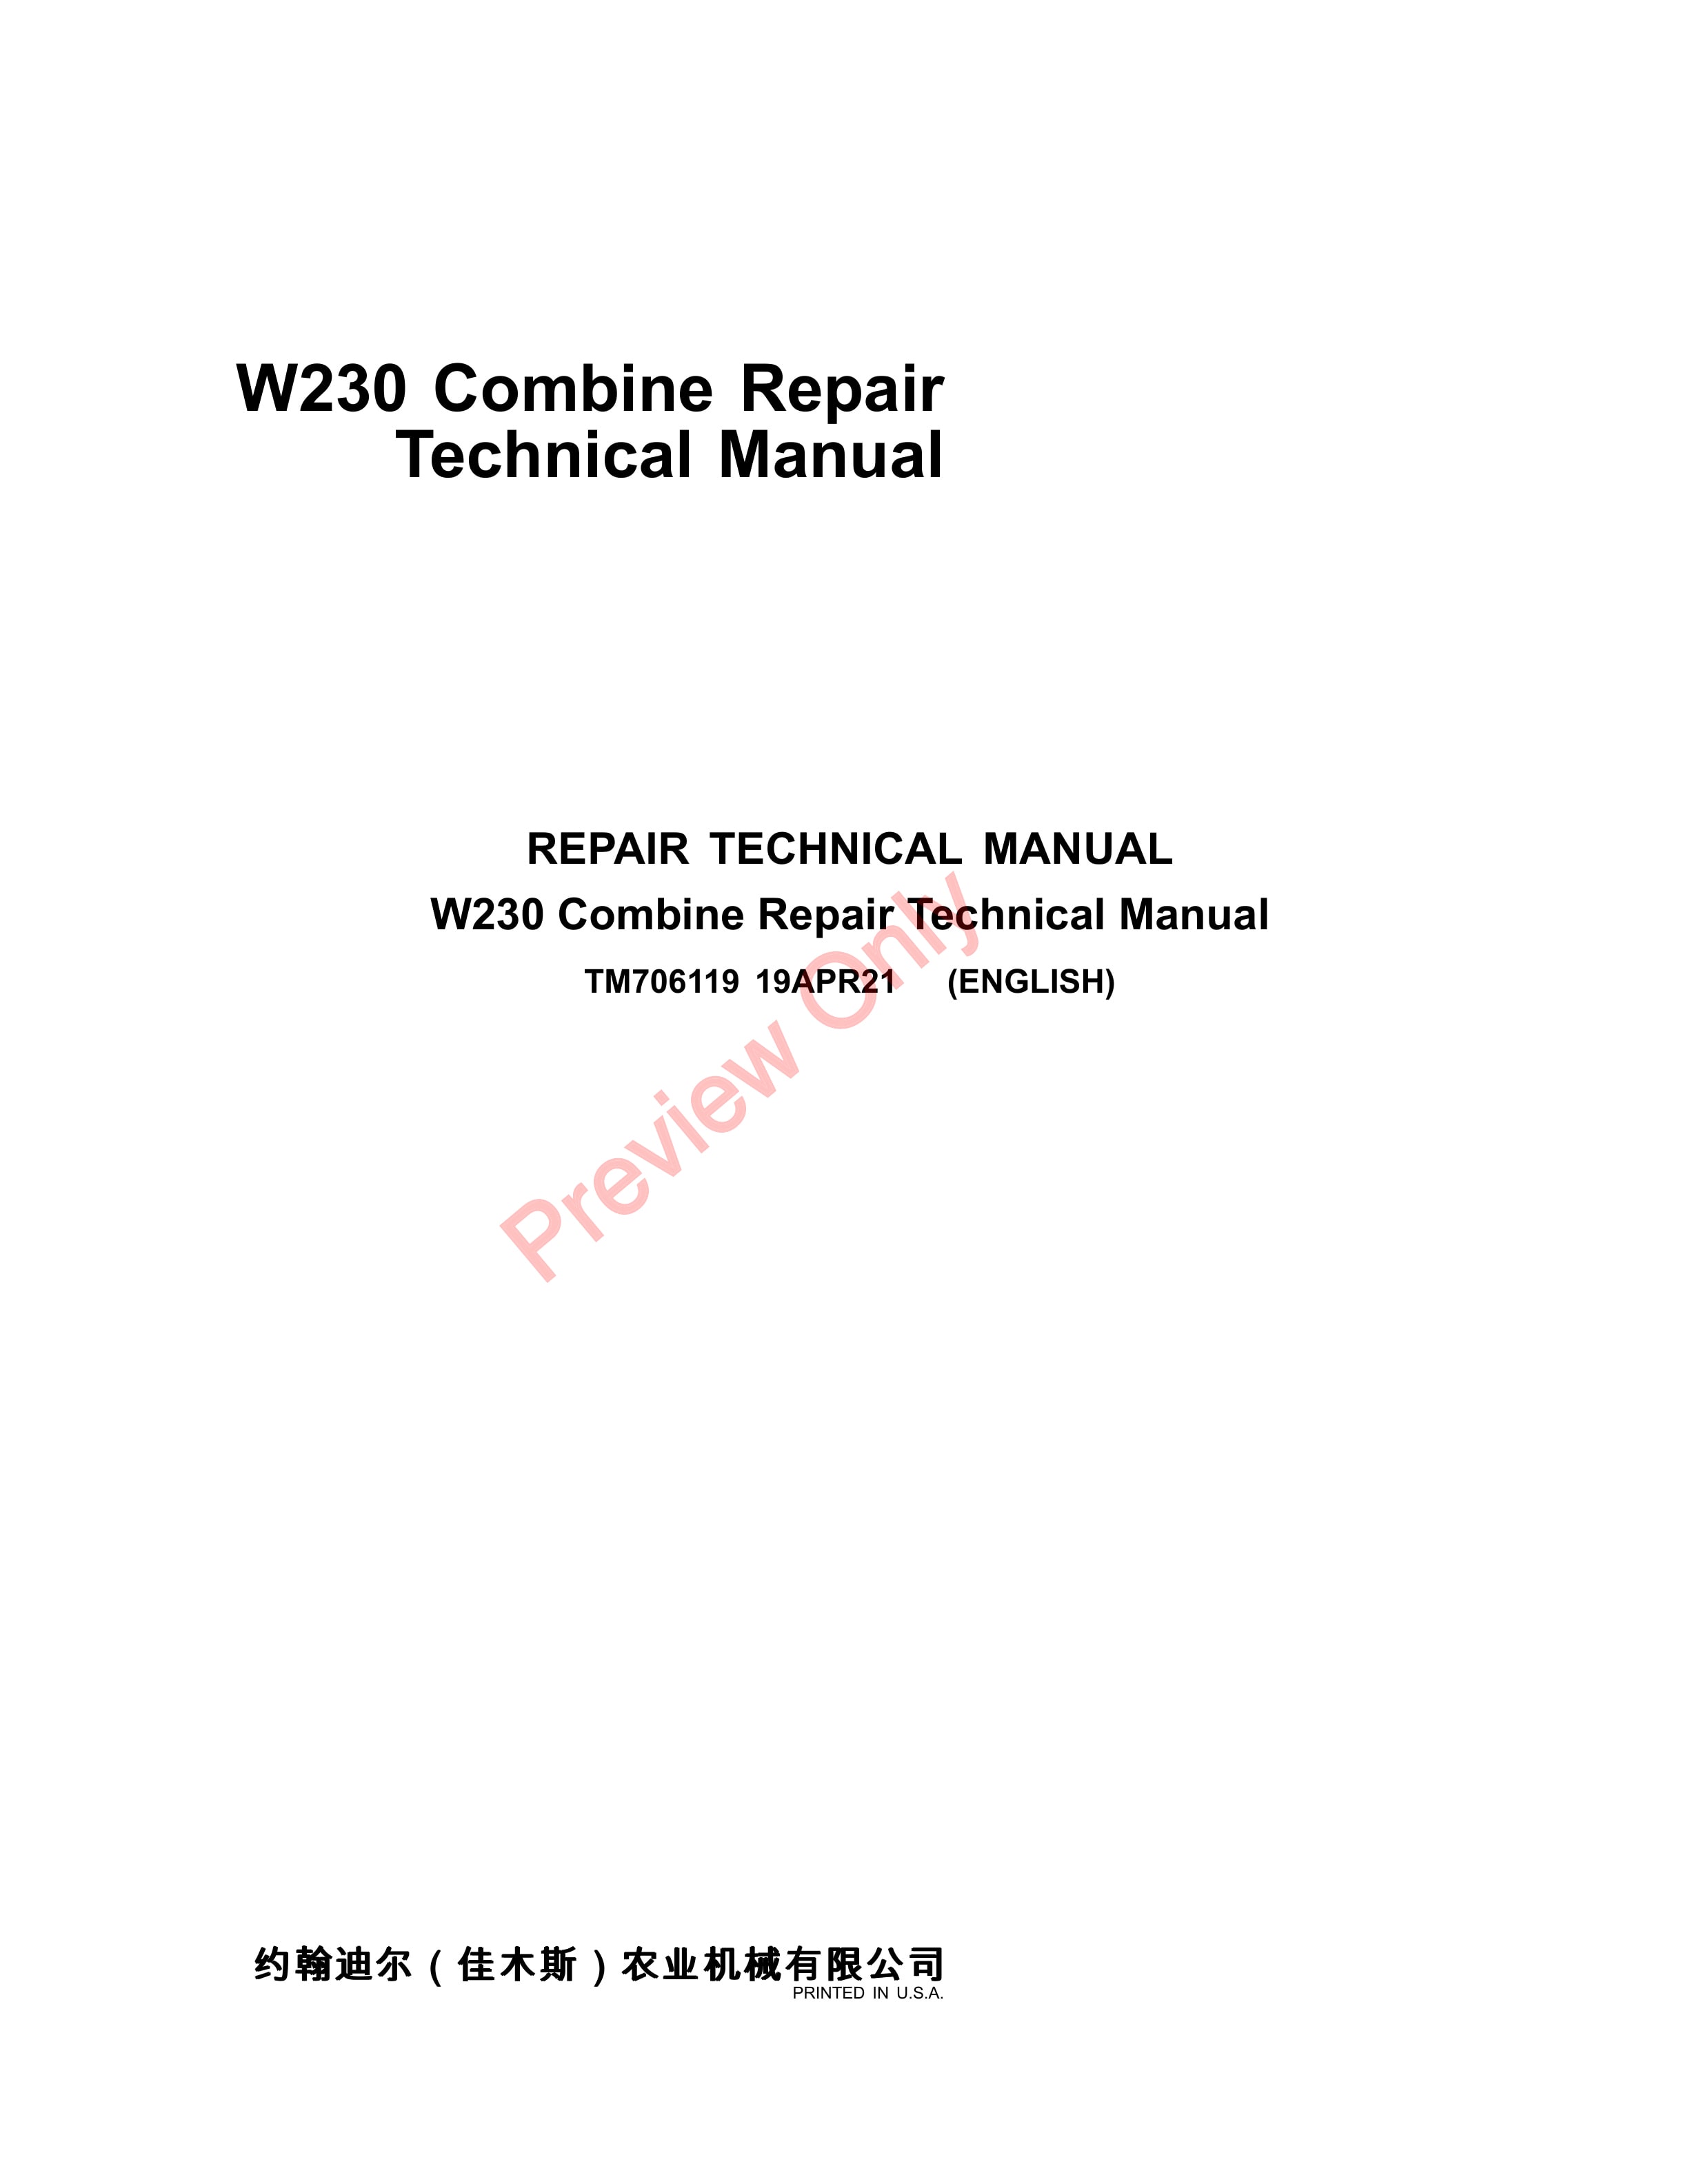 John Deere W230 Combine Repair Technical Manual TM706119 19APR21 1